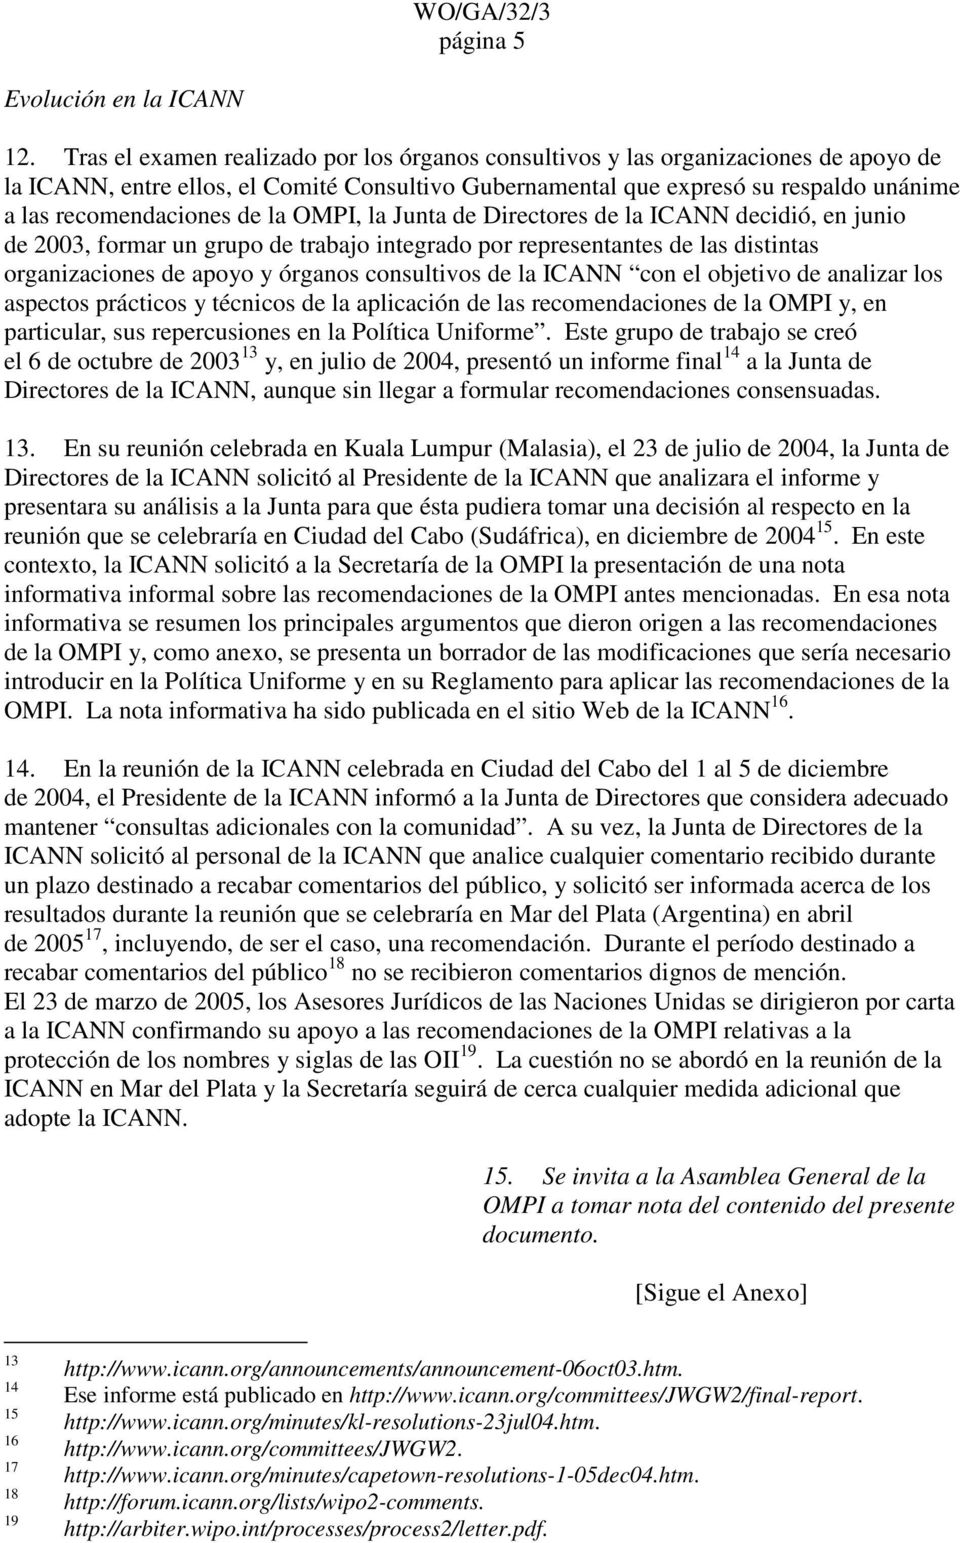 de la OMPI, la Junta de Directores de la ICANN decidió, en junio de 2003, formar un grupo de trabajo integrado por representantes de las distintas organizaciones de apoyo y órganos consultivos de la